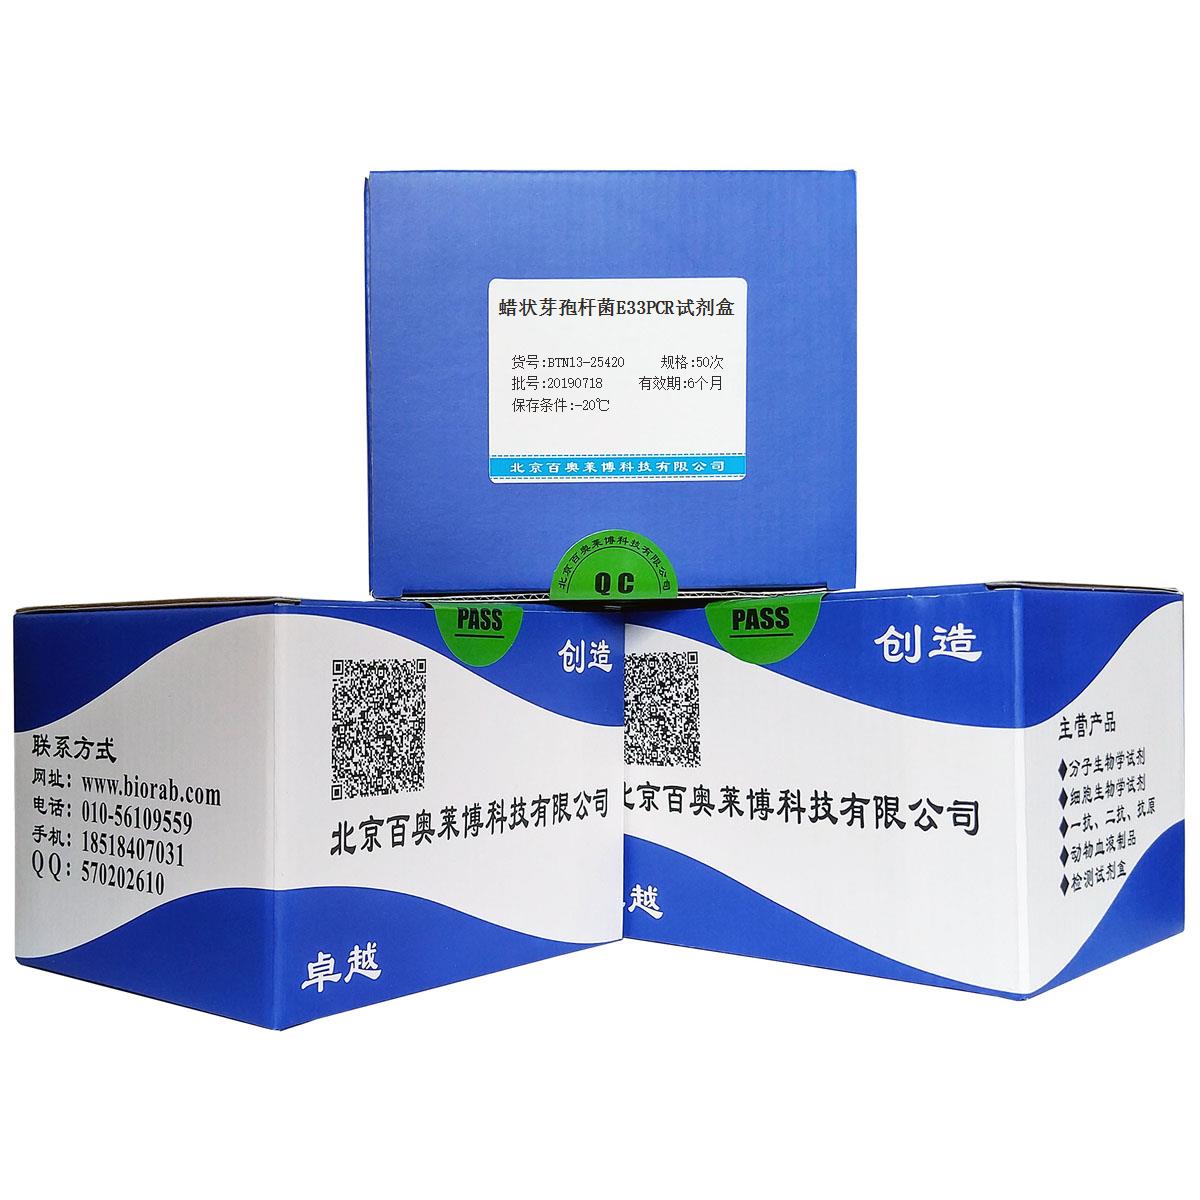 蜡状芽孢杆菌E33PCR试剂盒北京现货